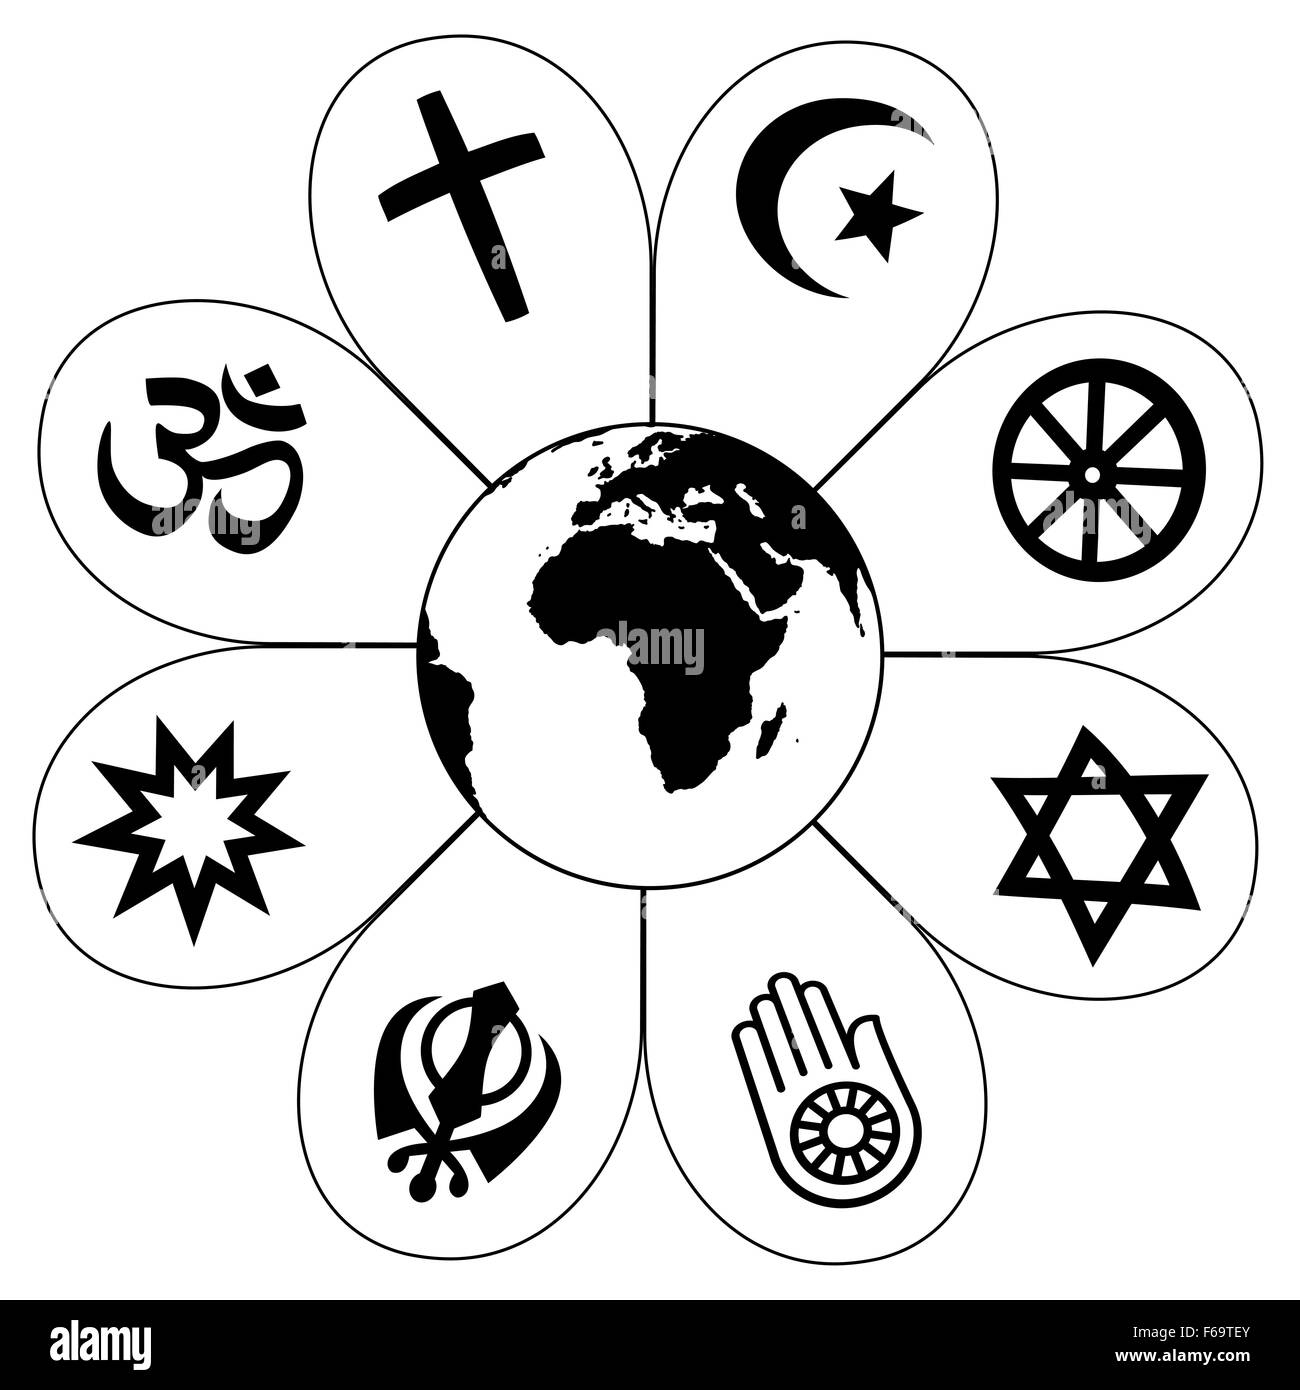 Символ объединения религий